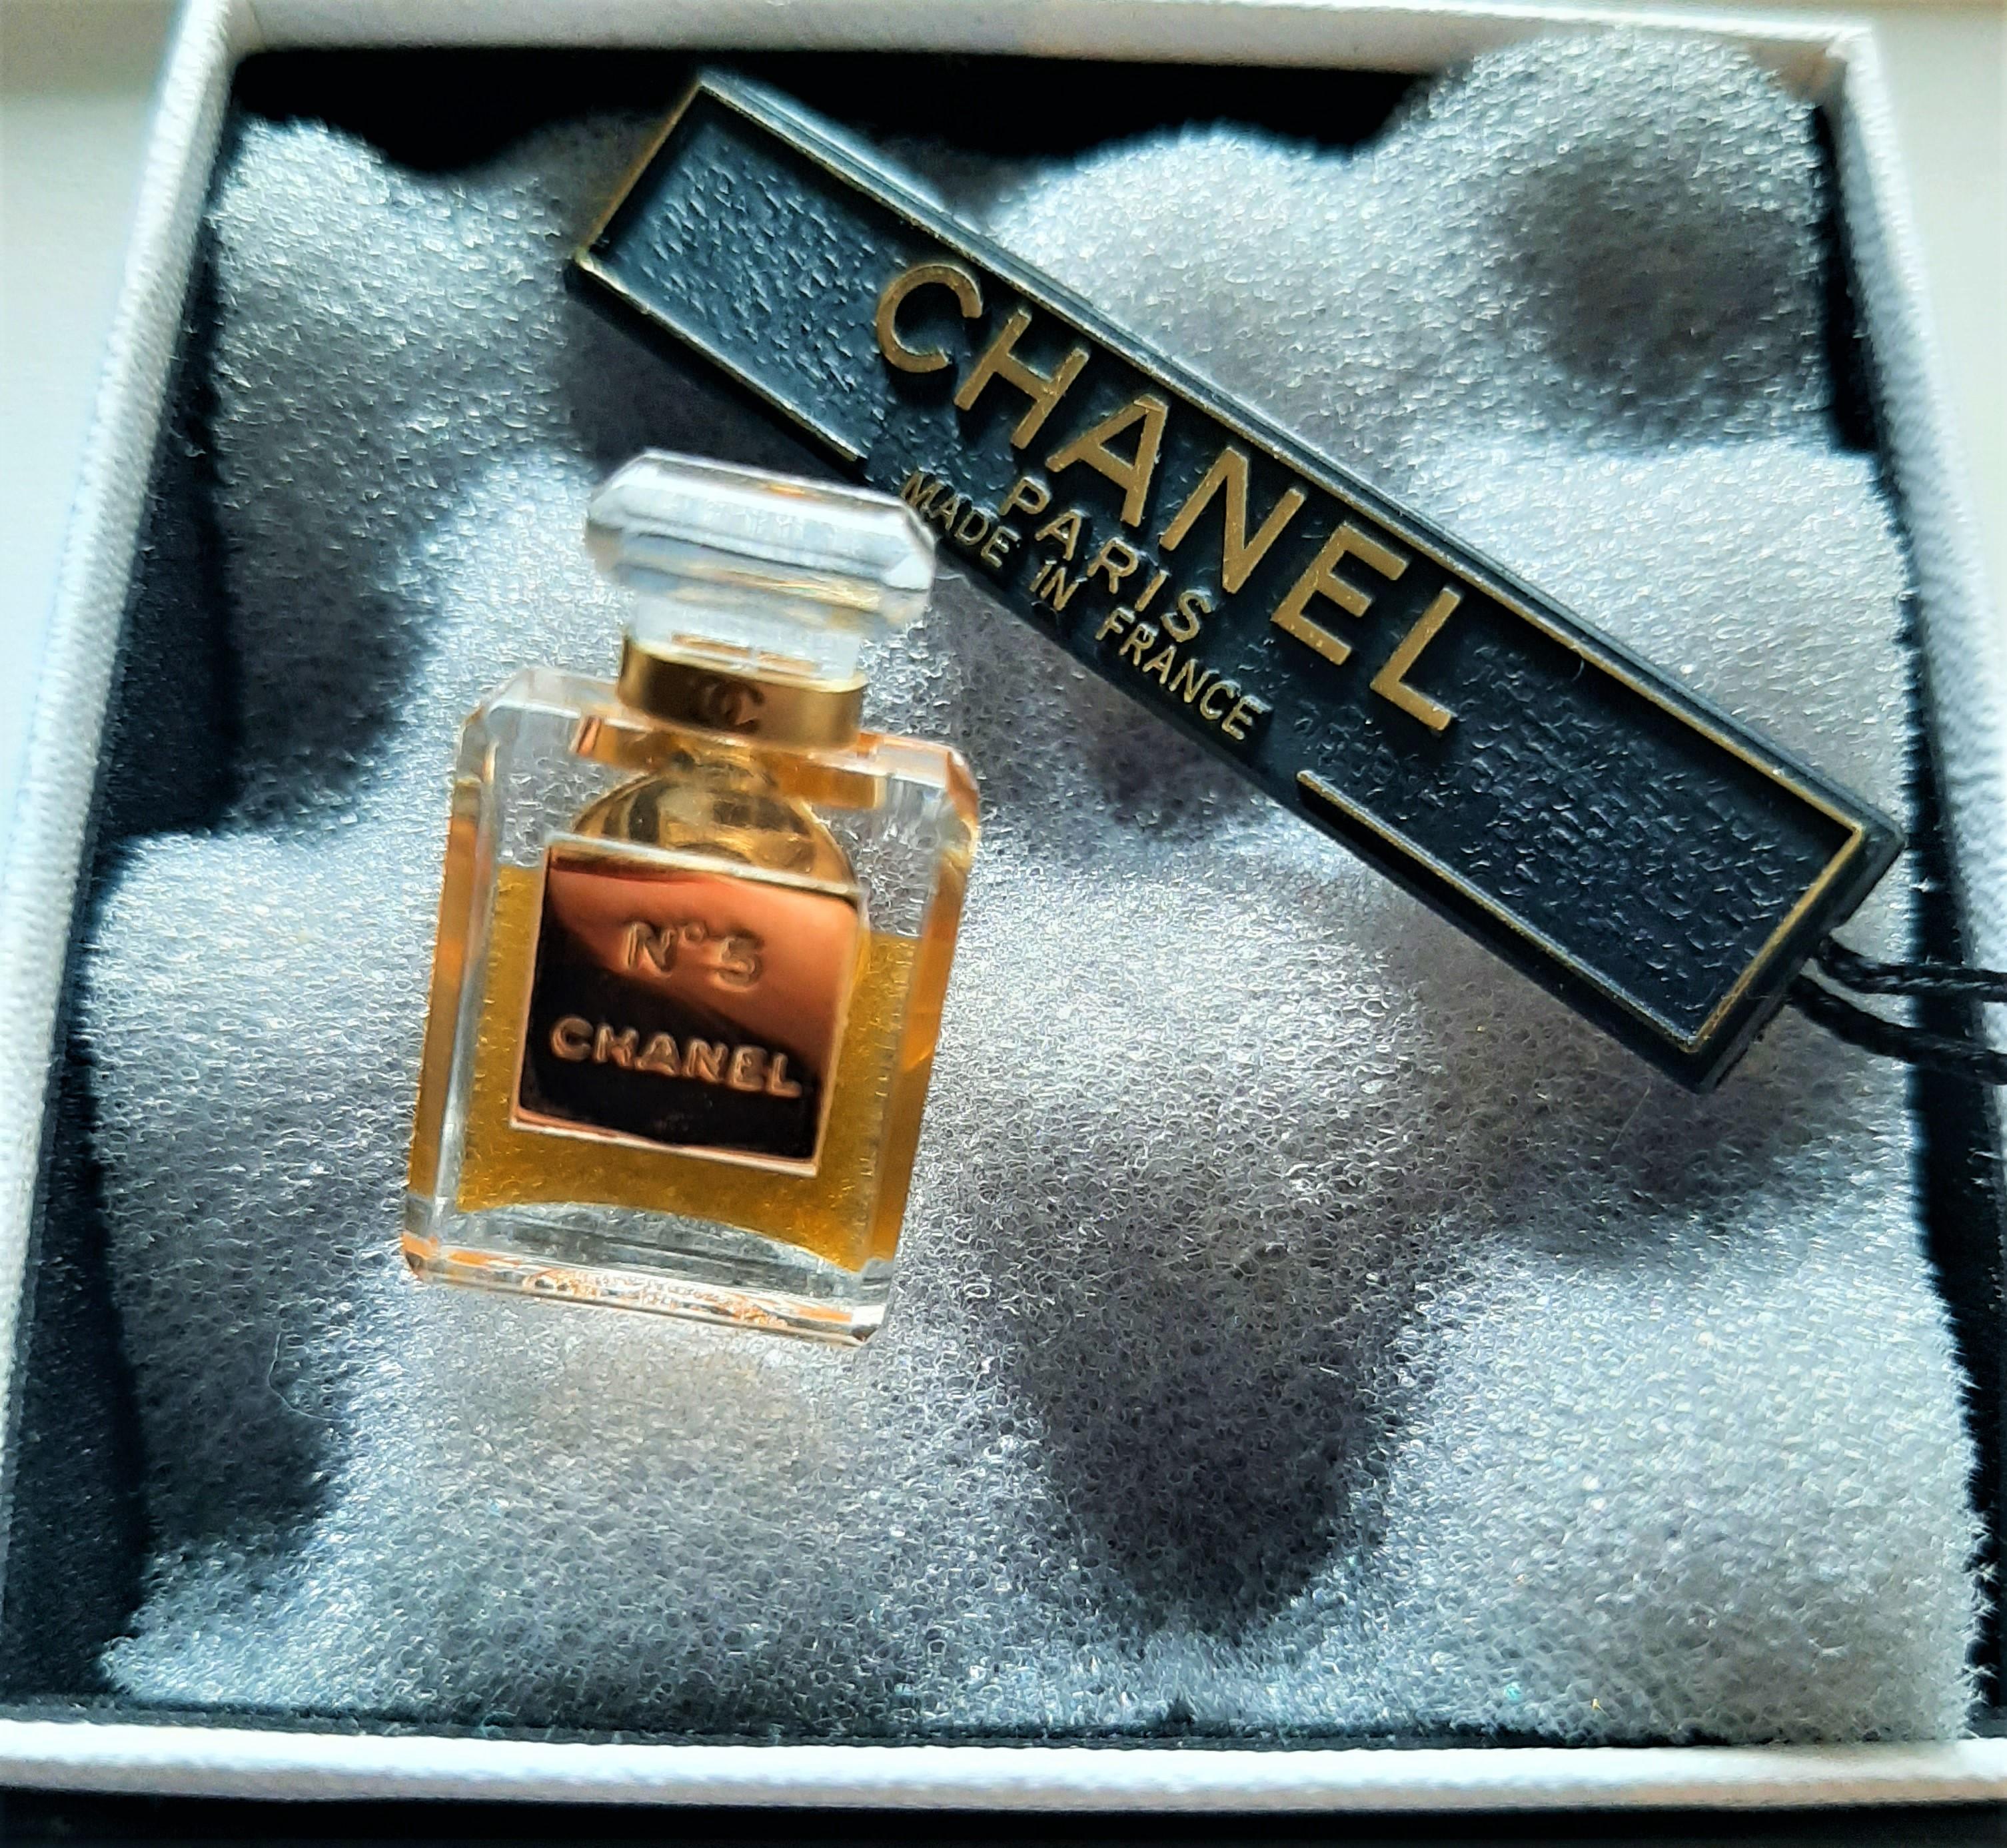 Original Chanel No 5 Bottle - 6 For Sale on 1stDibs  big chanel perfume  bottle, chanel no 5 original bottle